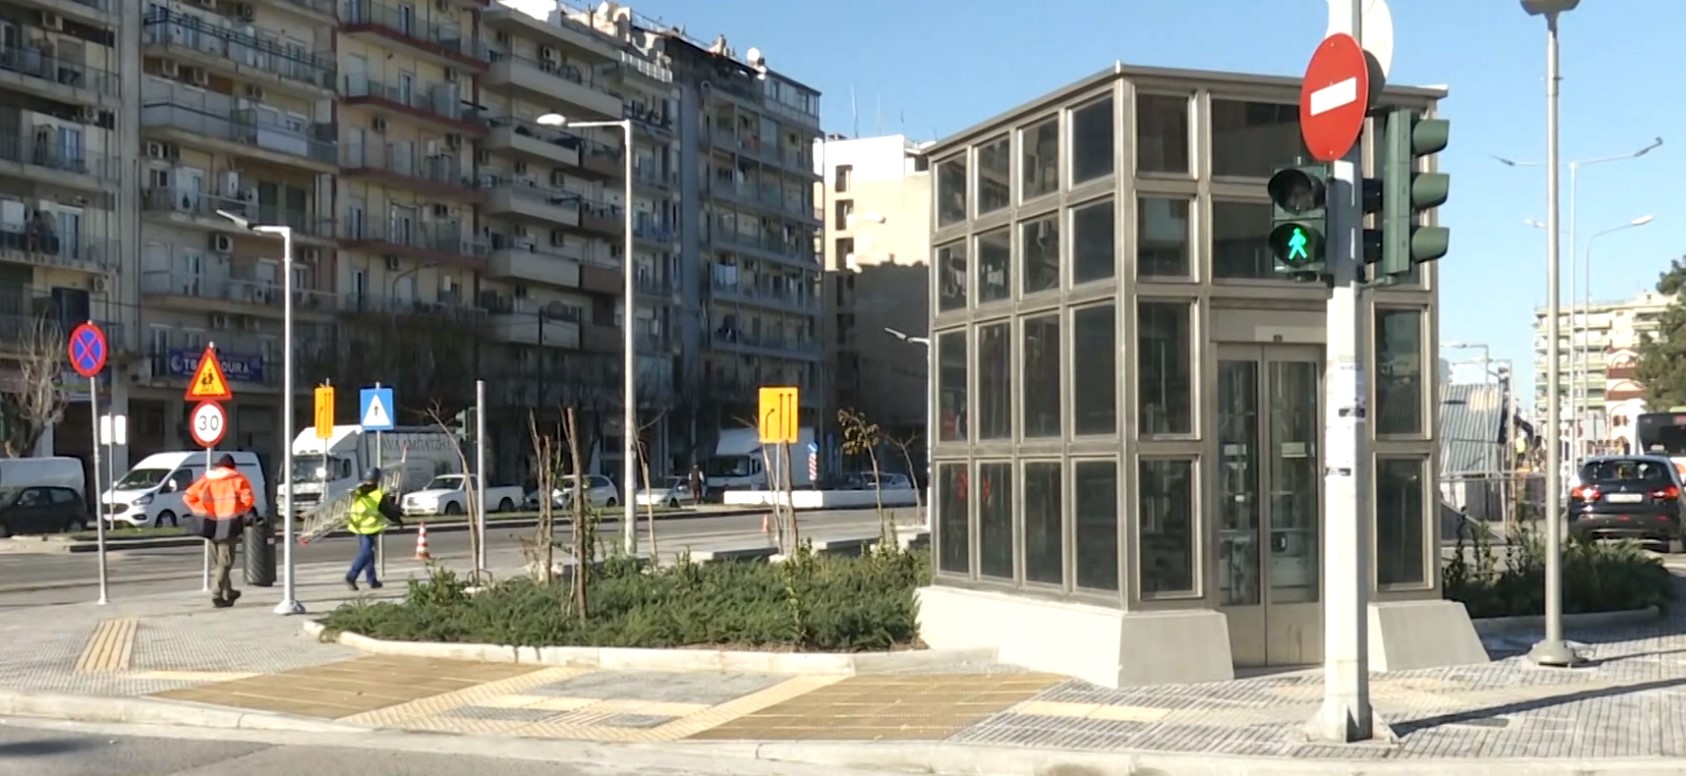 Θεσσαλονίκη: Μετά από 17 χρόνια η εικόνα της οδού Μοναστηρίου αλλάζει